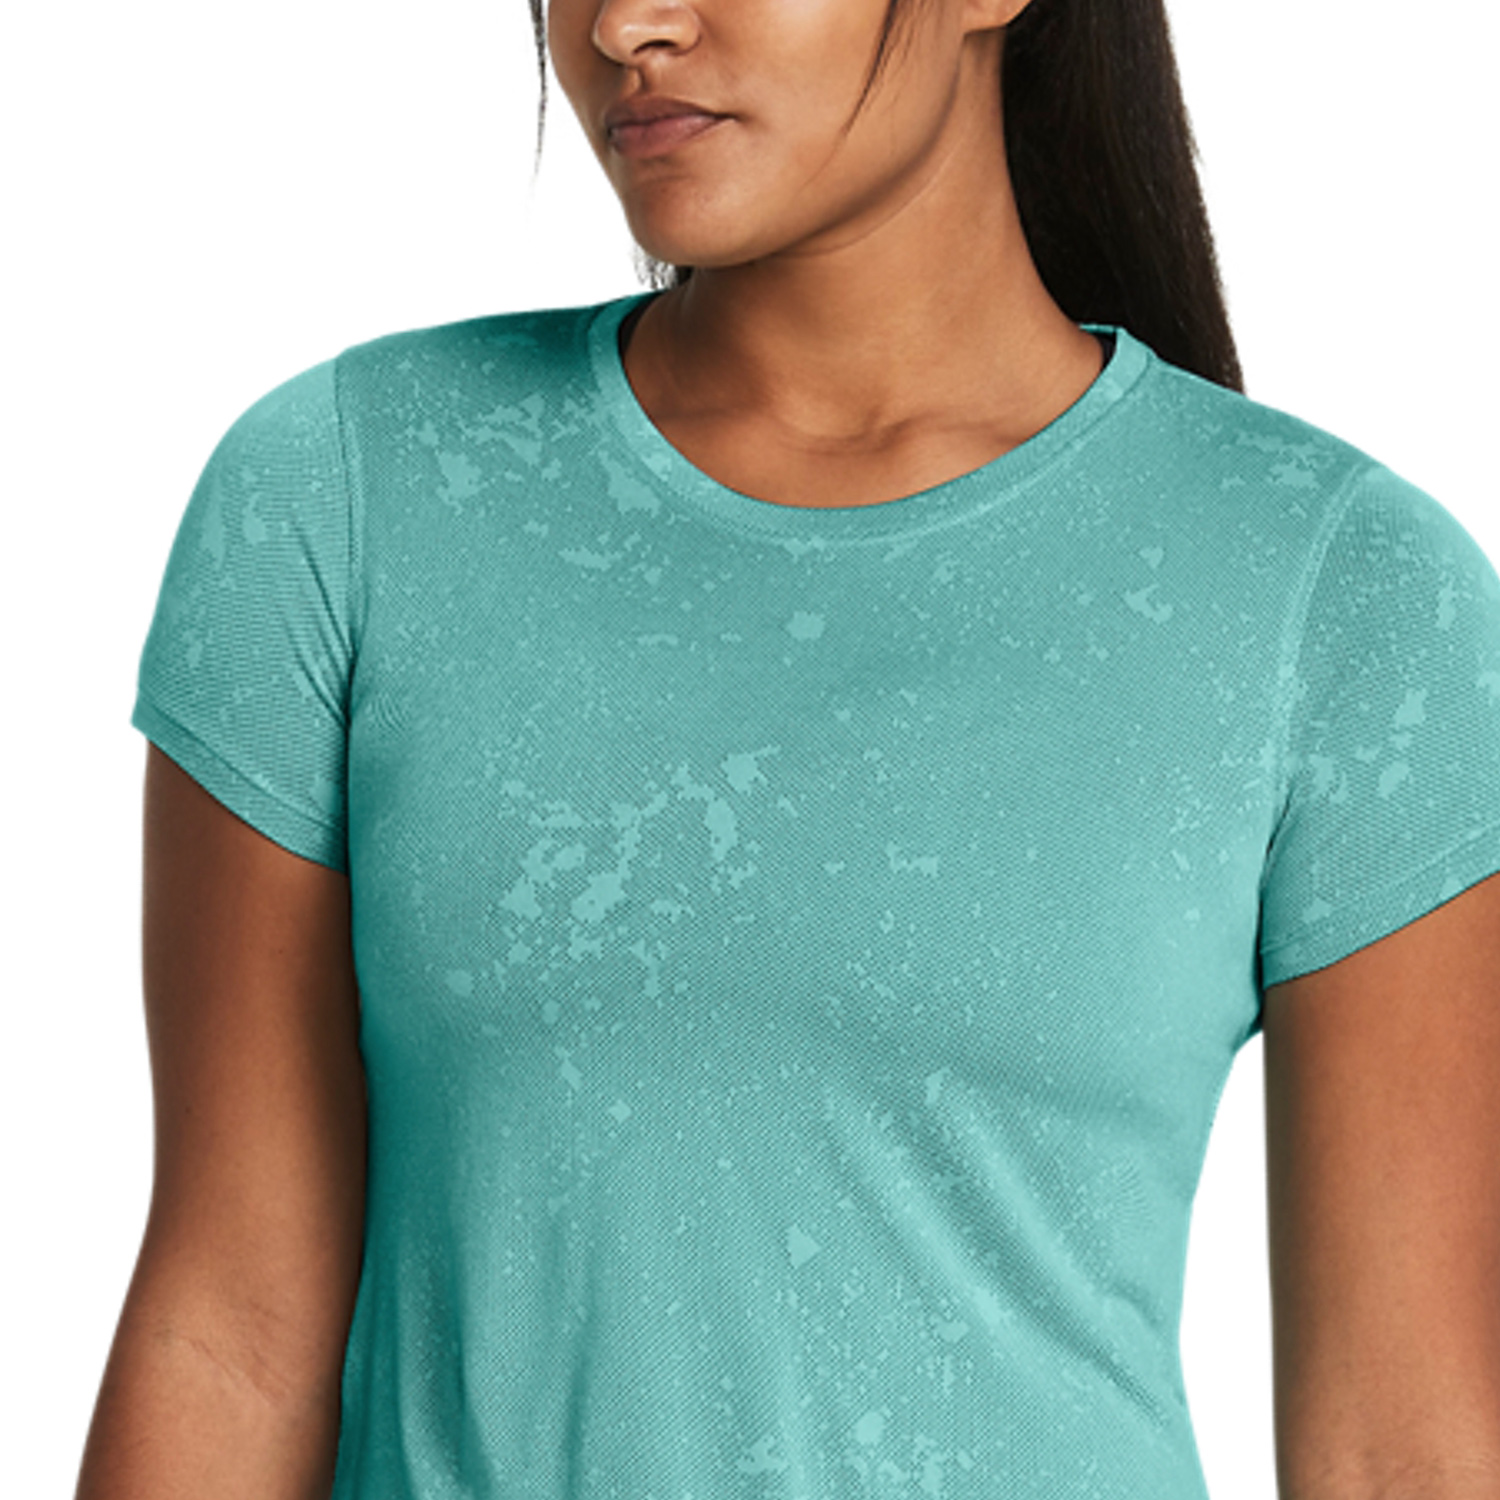 Under Armour Streaker Splatter T-Shirt - Radial Turquoise/Reflective